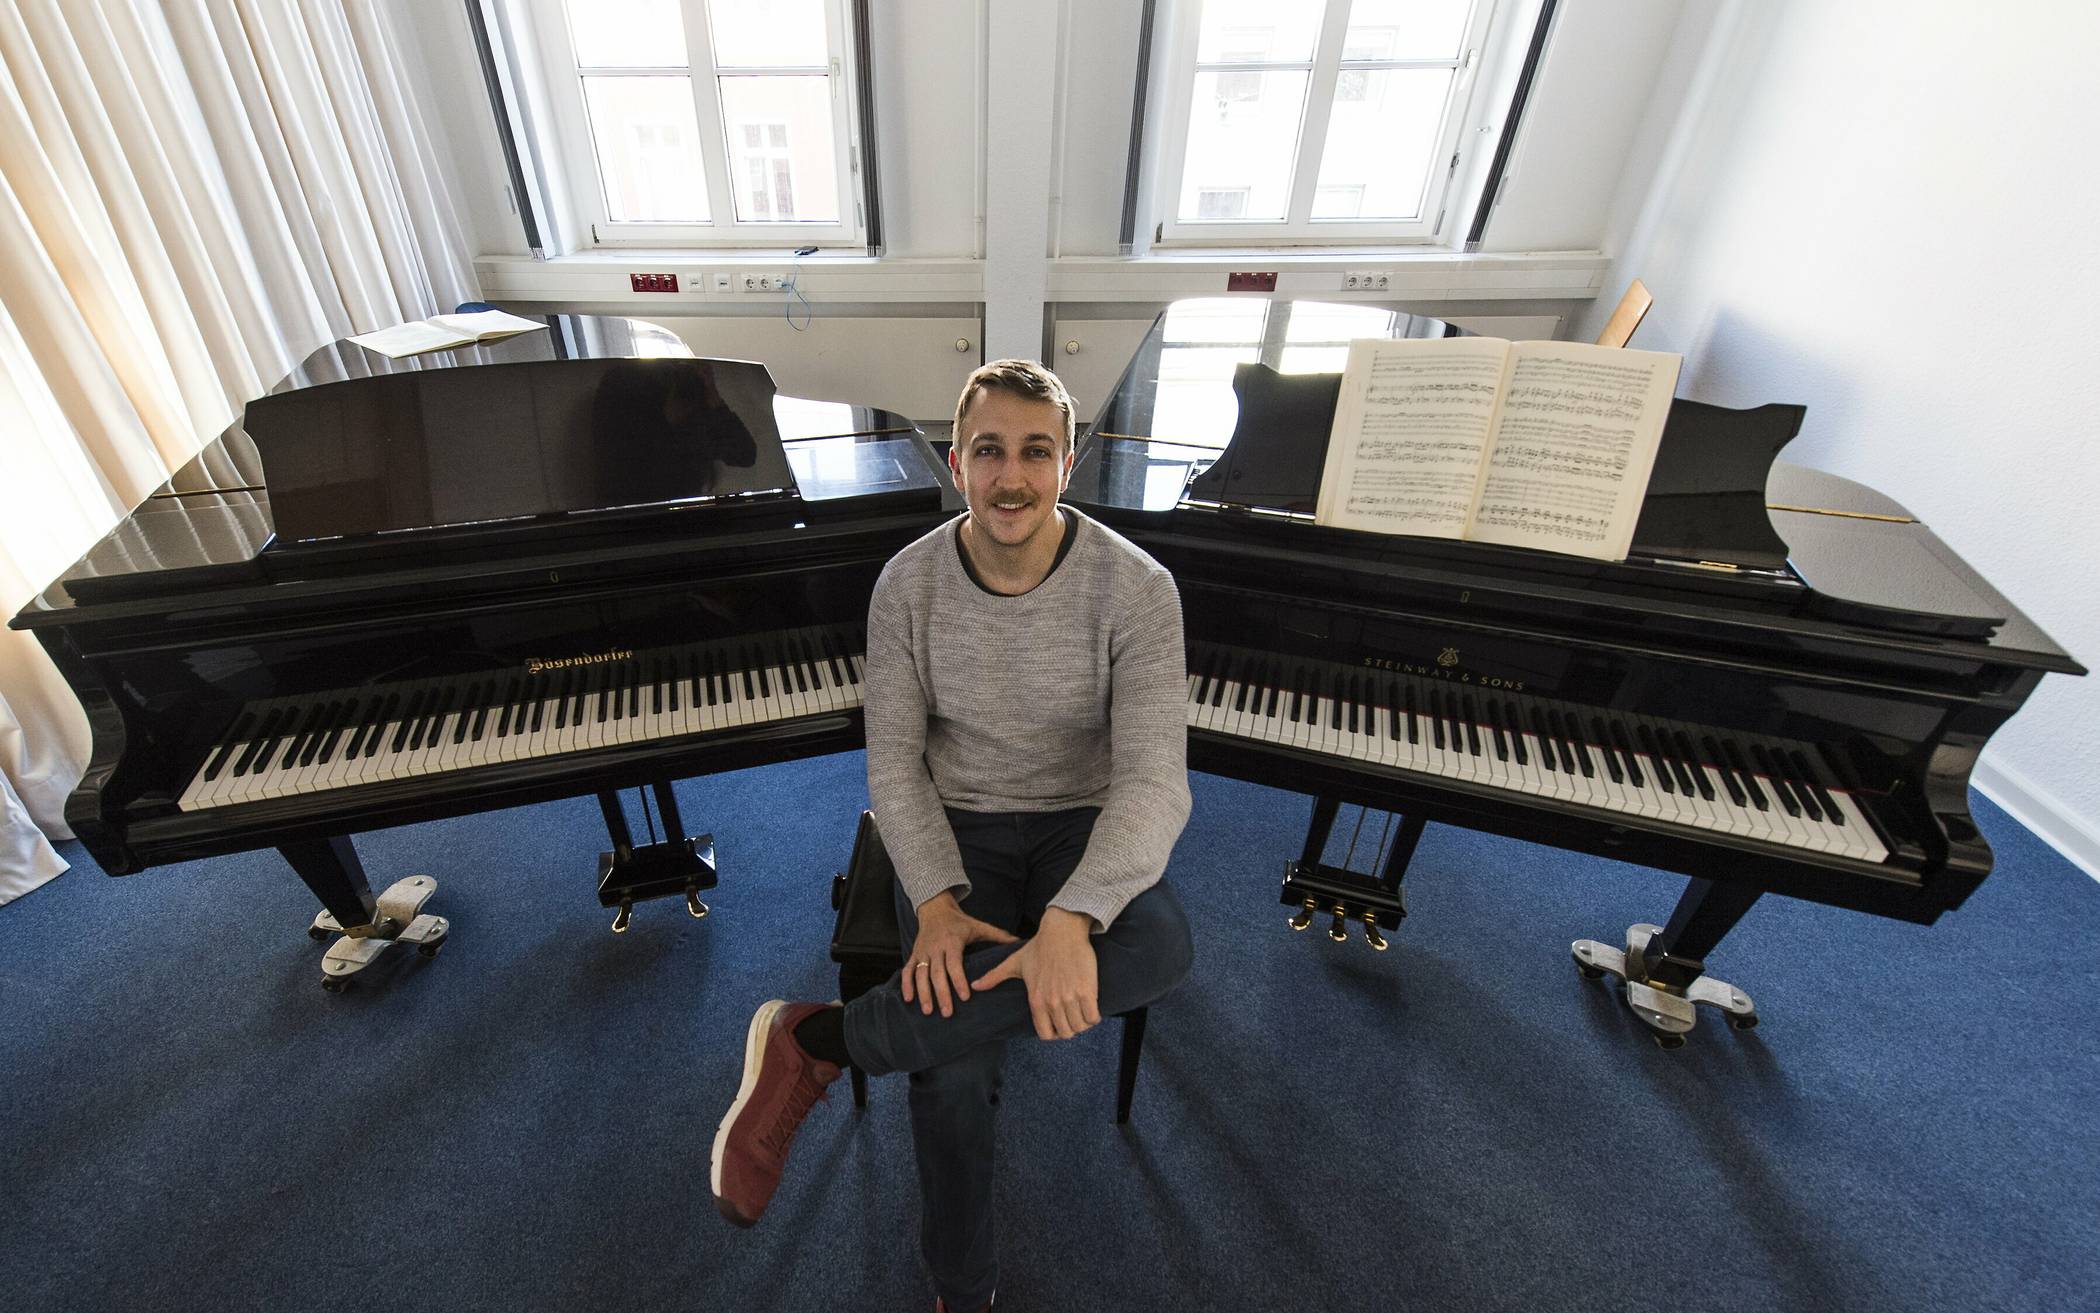  „Mein Leben ist das Klavier“ – das sagt Fabian Müller, Pianist und Musikhochschul-Professor in Wuppertal. 